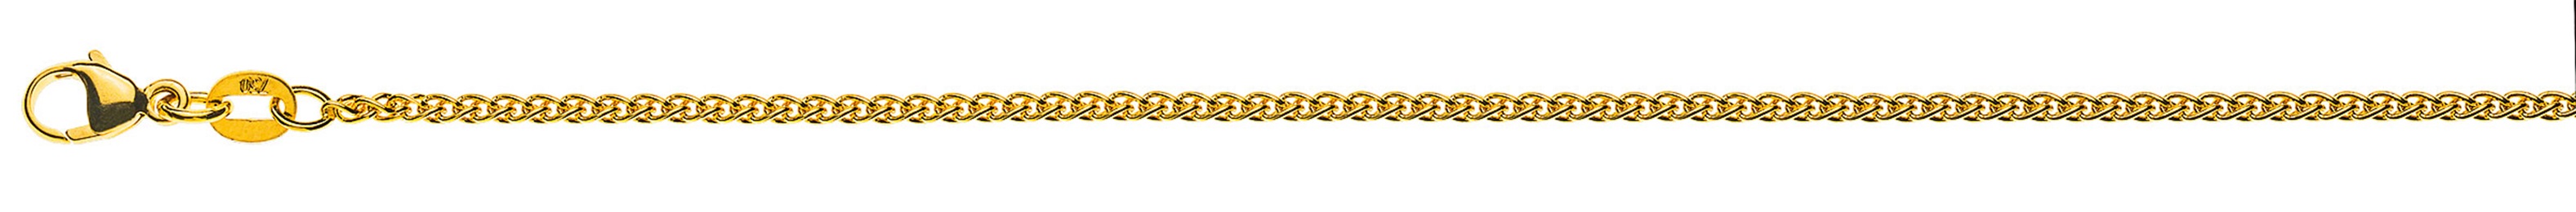 AURONOS Prestige Halskette Gelbgold 18K Zopfkette 55cm 1.6mm